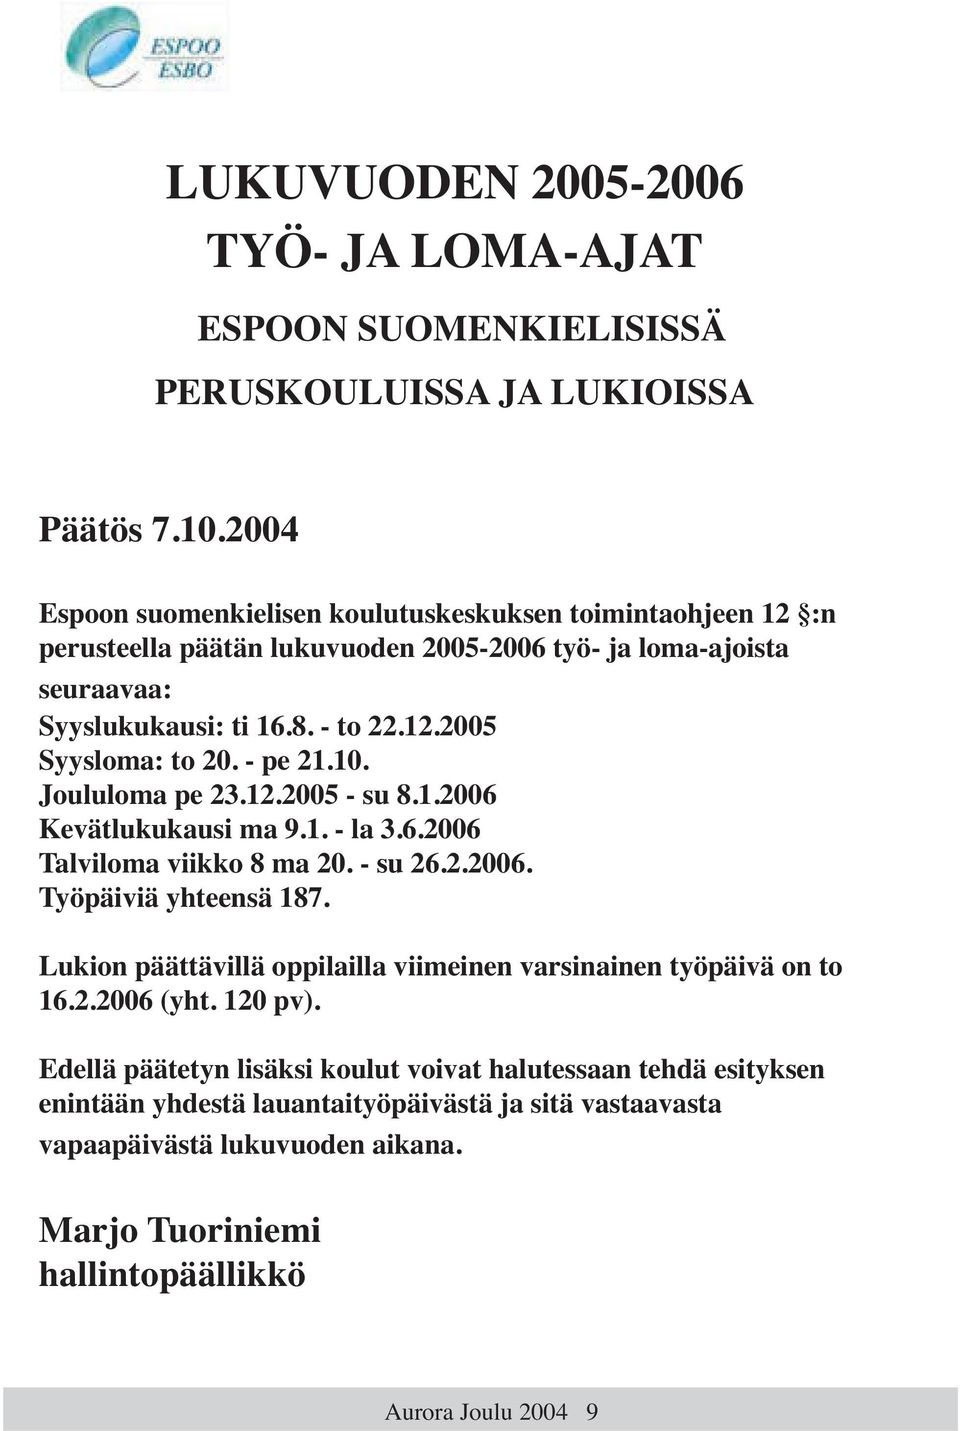 - pe 21.10. Joululoma pe 23.12.2005 - su 8.1.2006 Kevätlukukausi ma 9.1. - la 3.6.2006 Talviloma viikko 8 ma 20. - su 26.2.2006. Työpäiviä yhteensä 187.